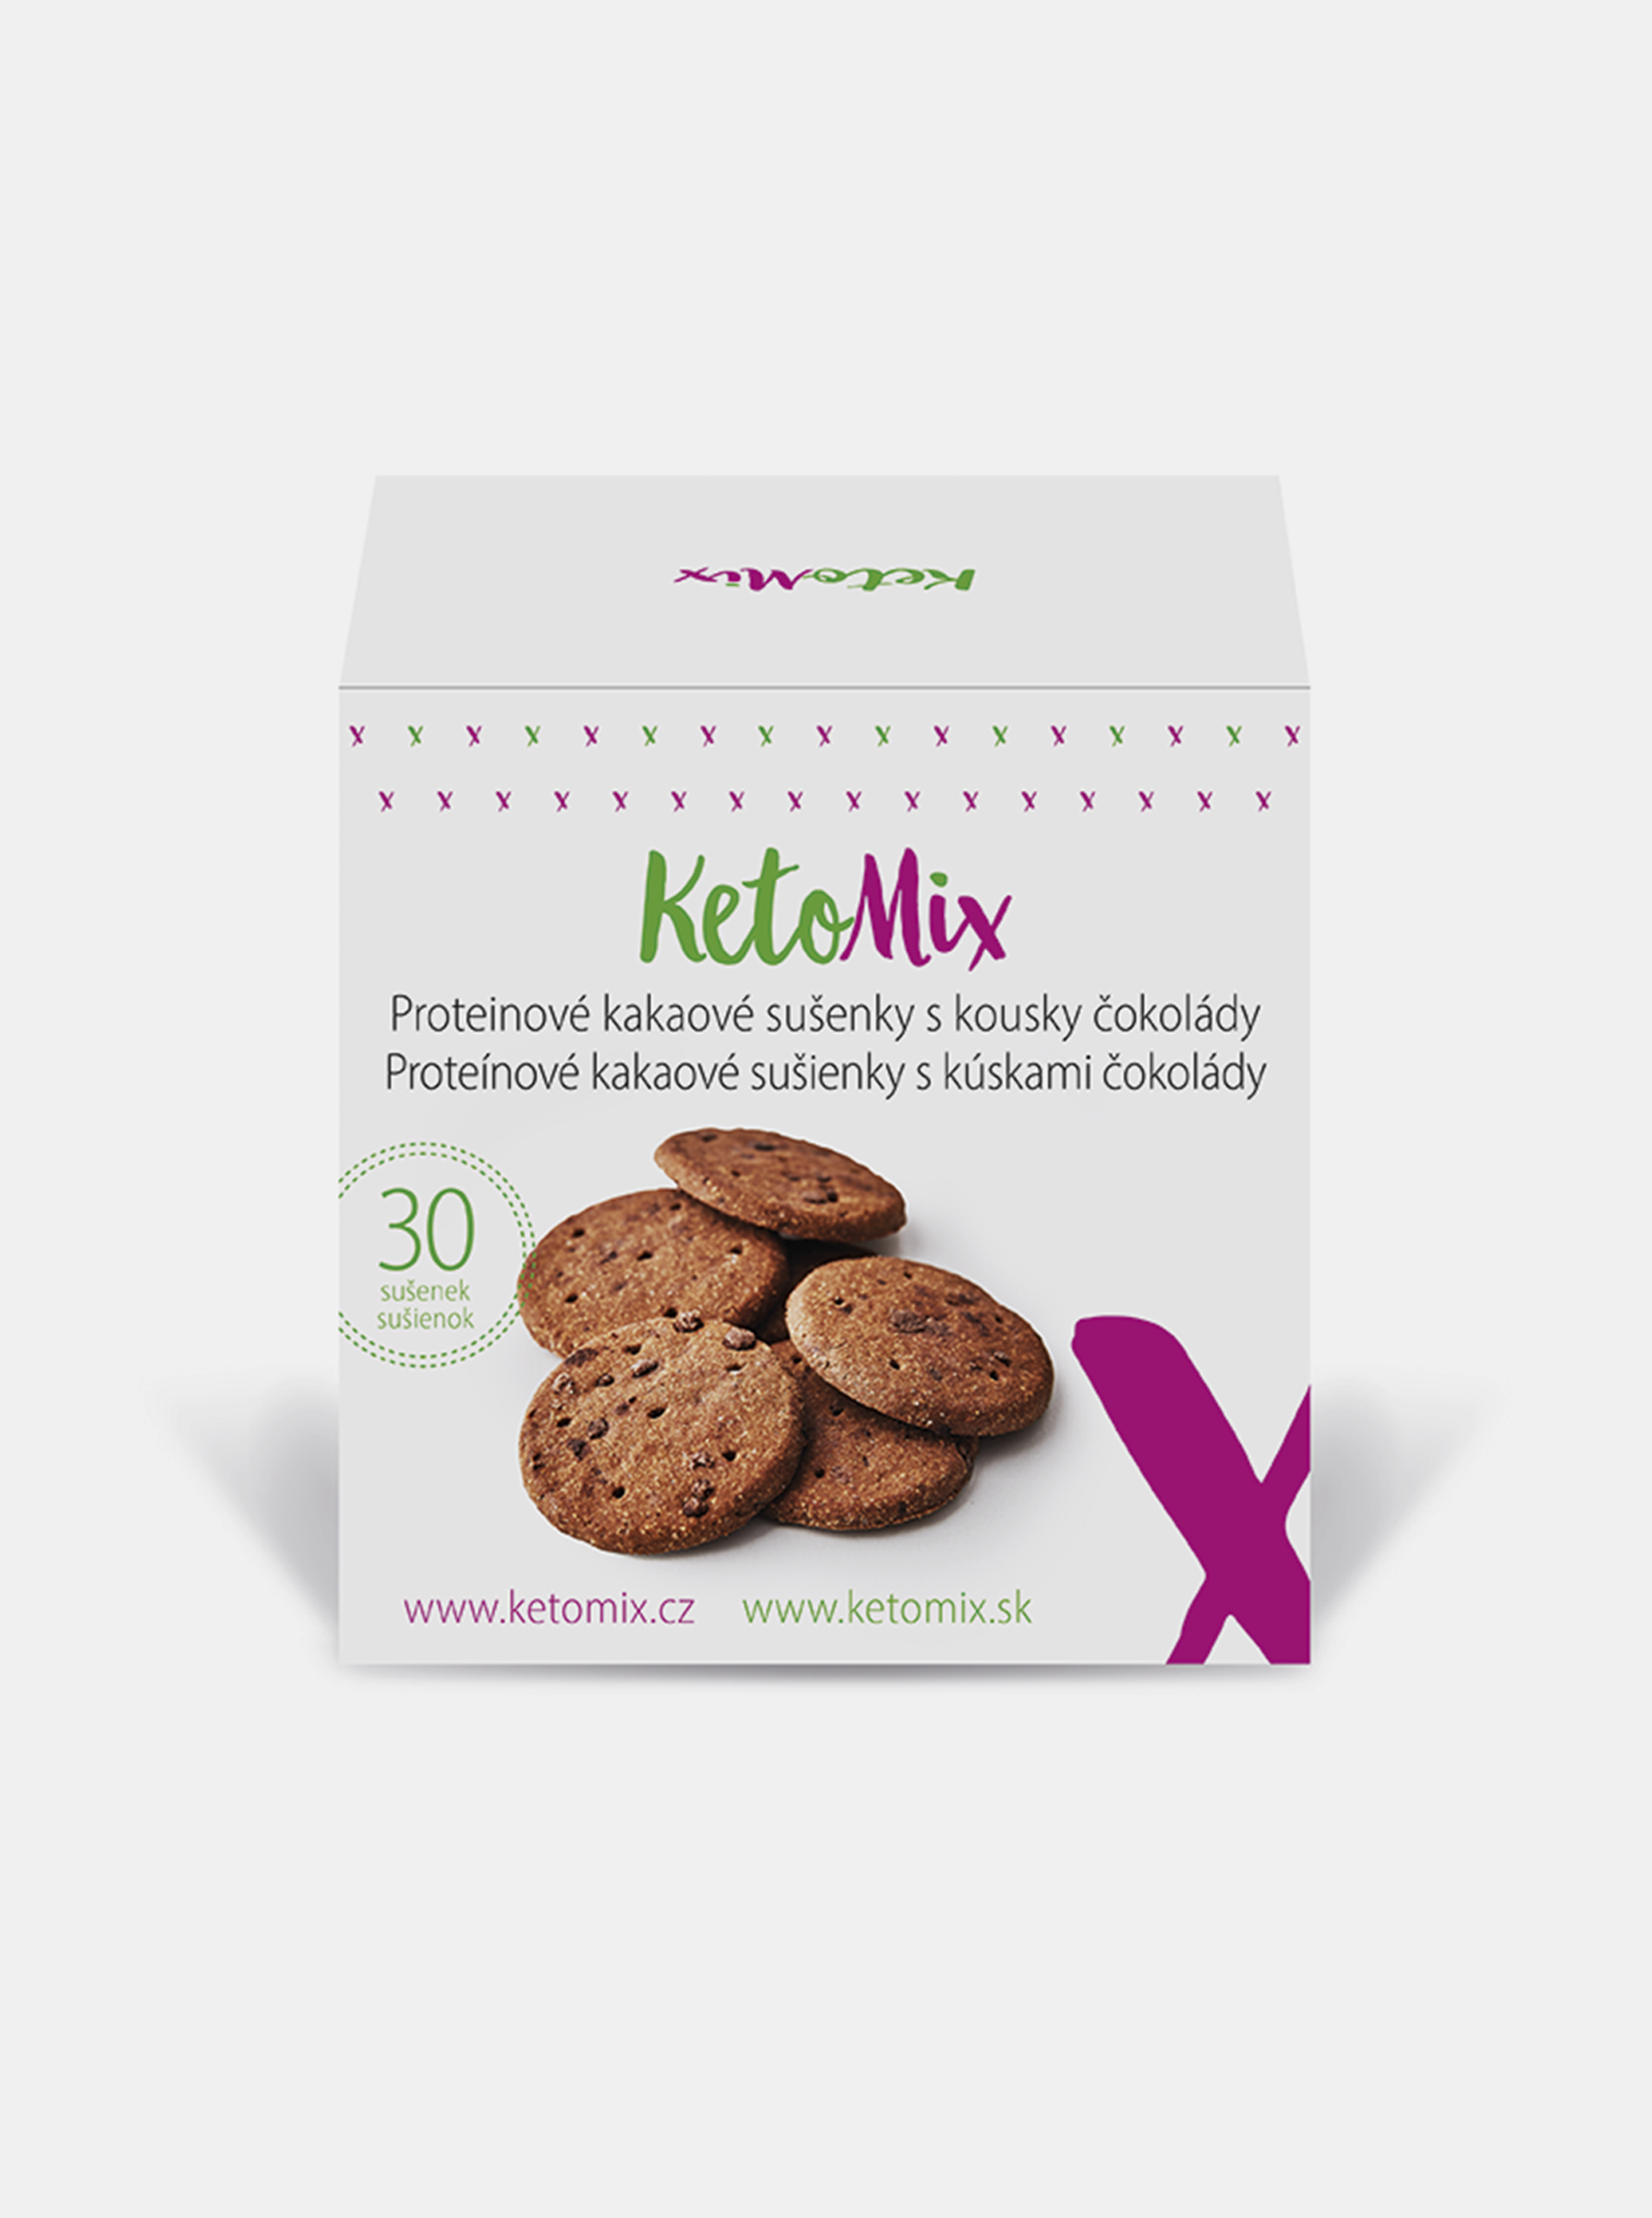 Fotografie Proteinové kakaové sušenky s kousky čokolády KetoMix (30 sušenek)